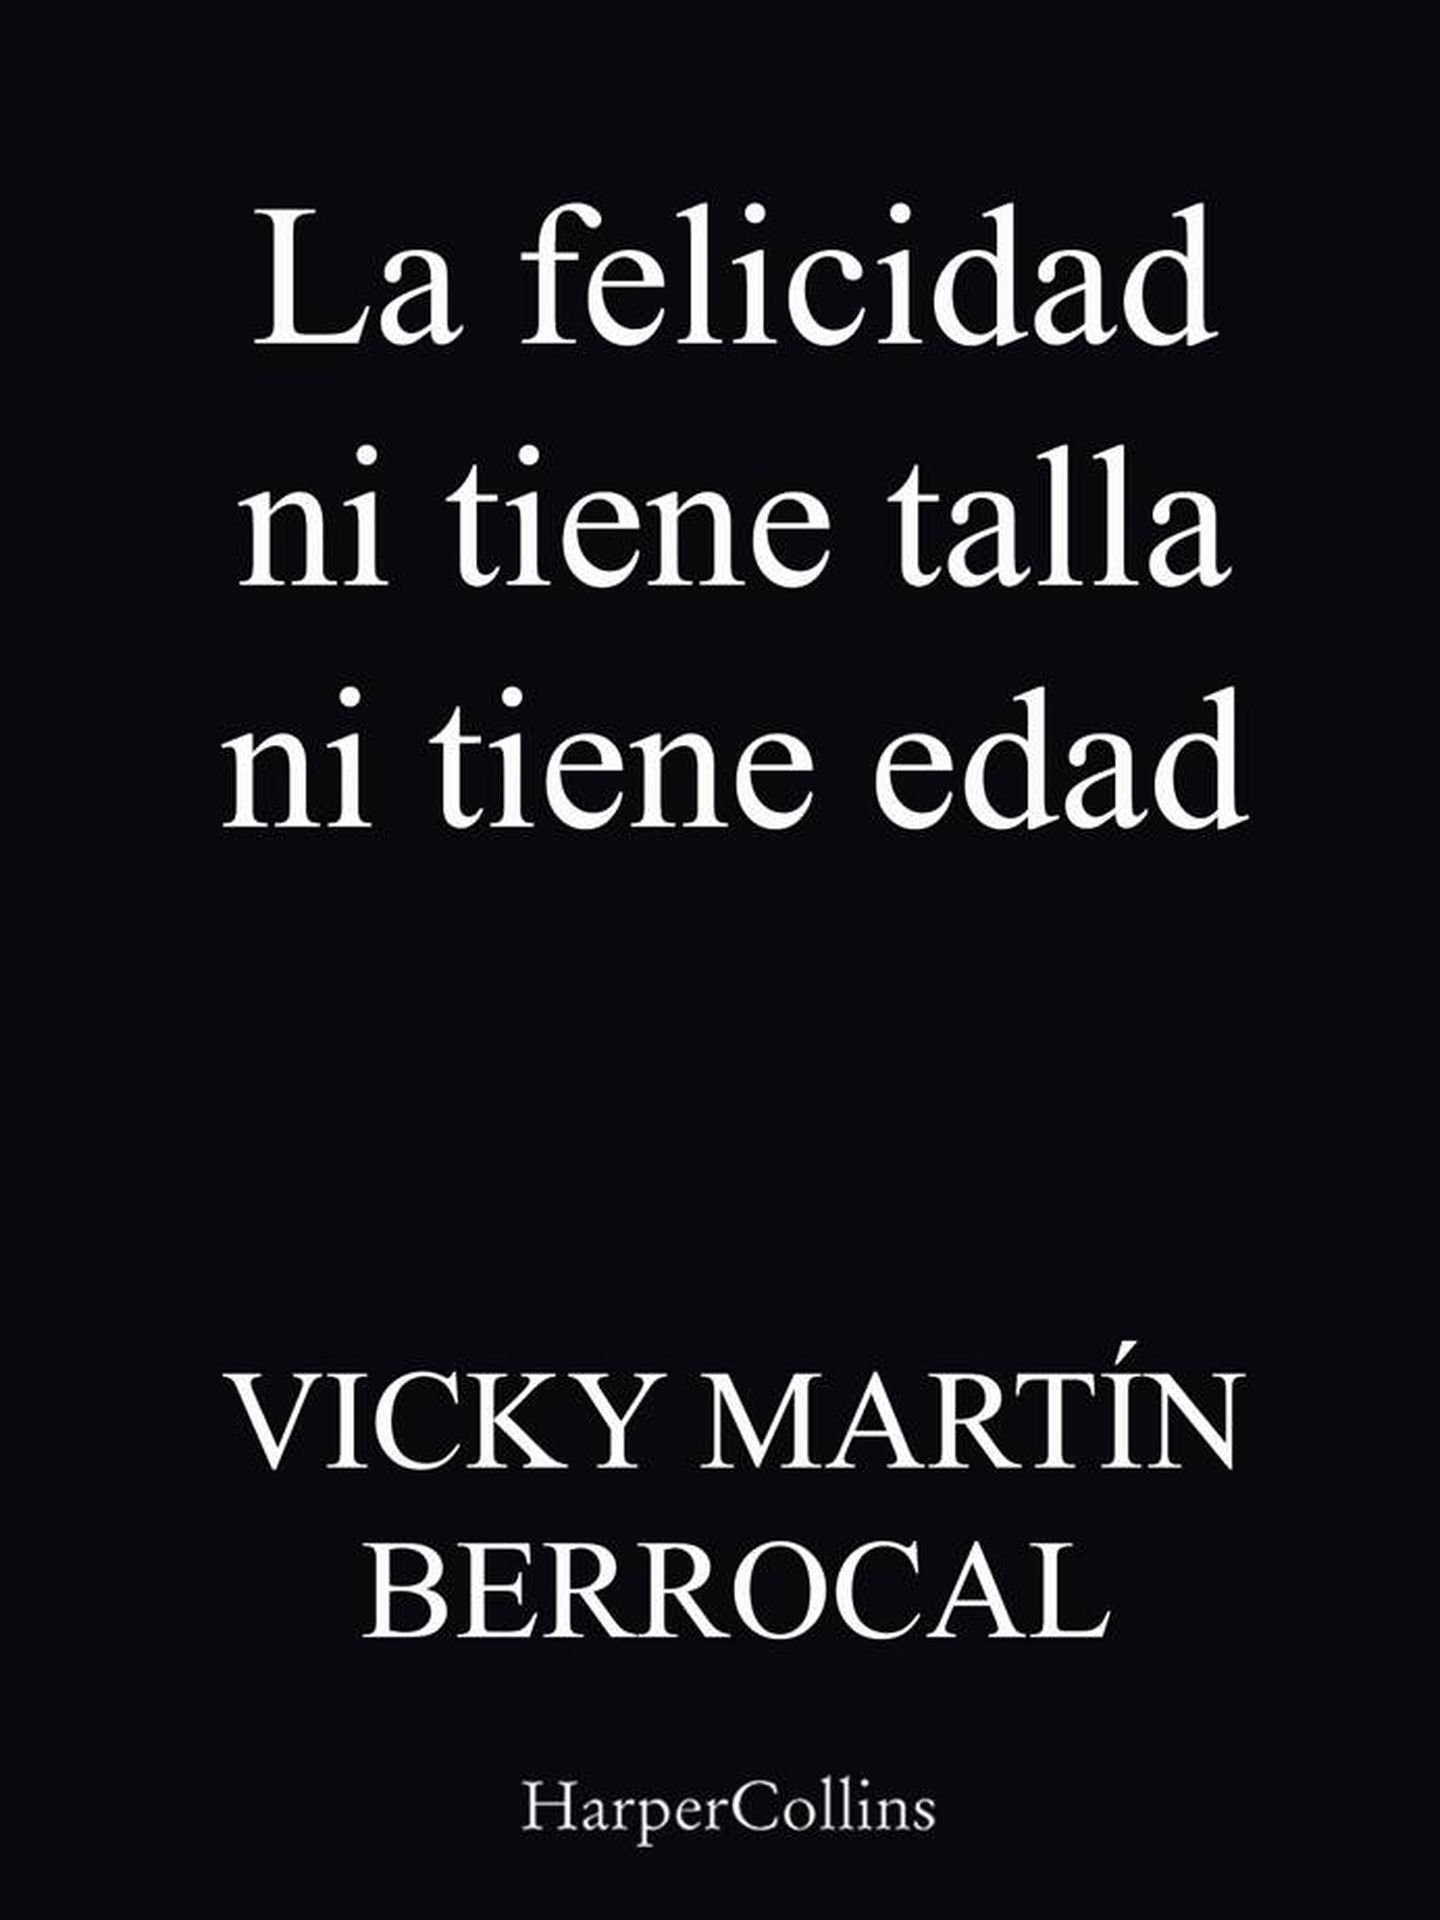 Portada del nuevo libro de Vicky Martín Berrocal. (Cortesía/Amazon)